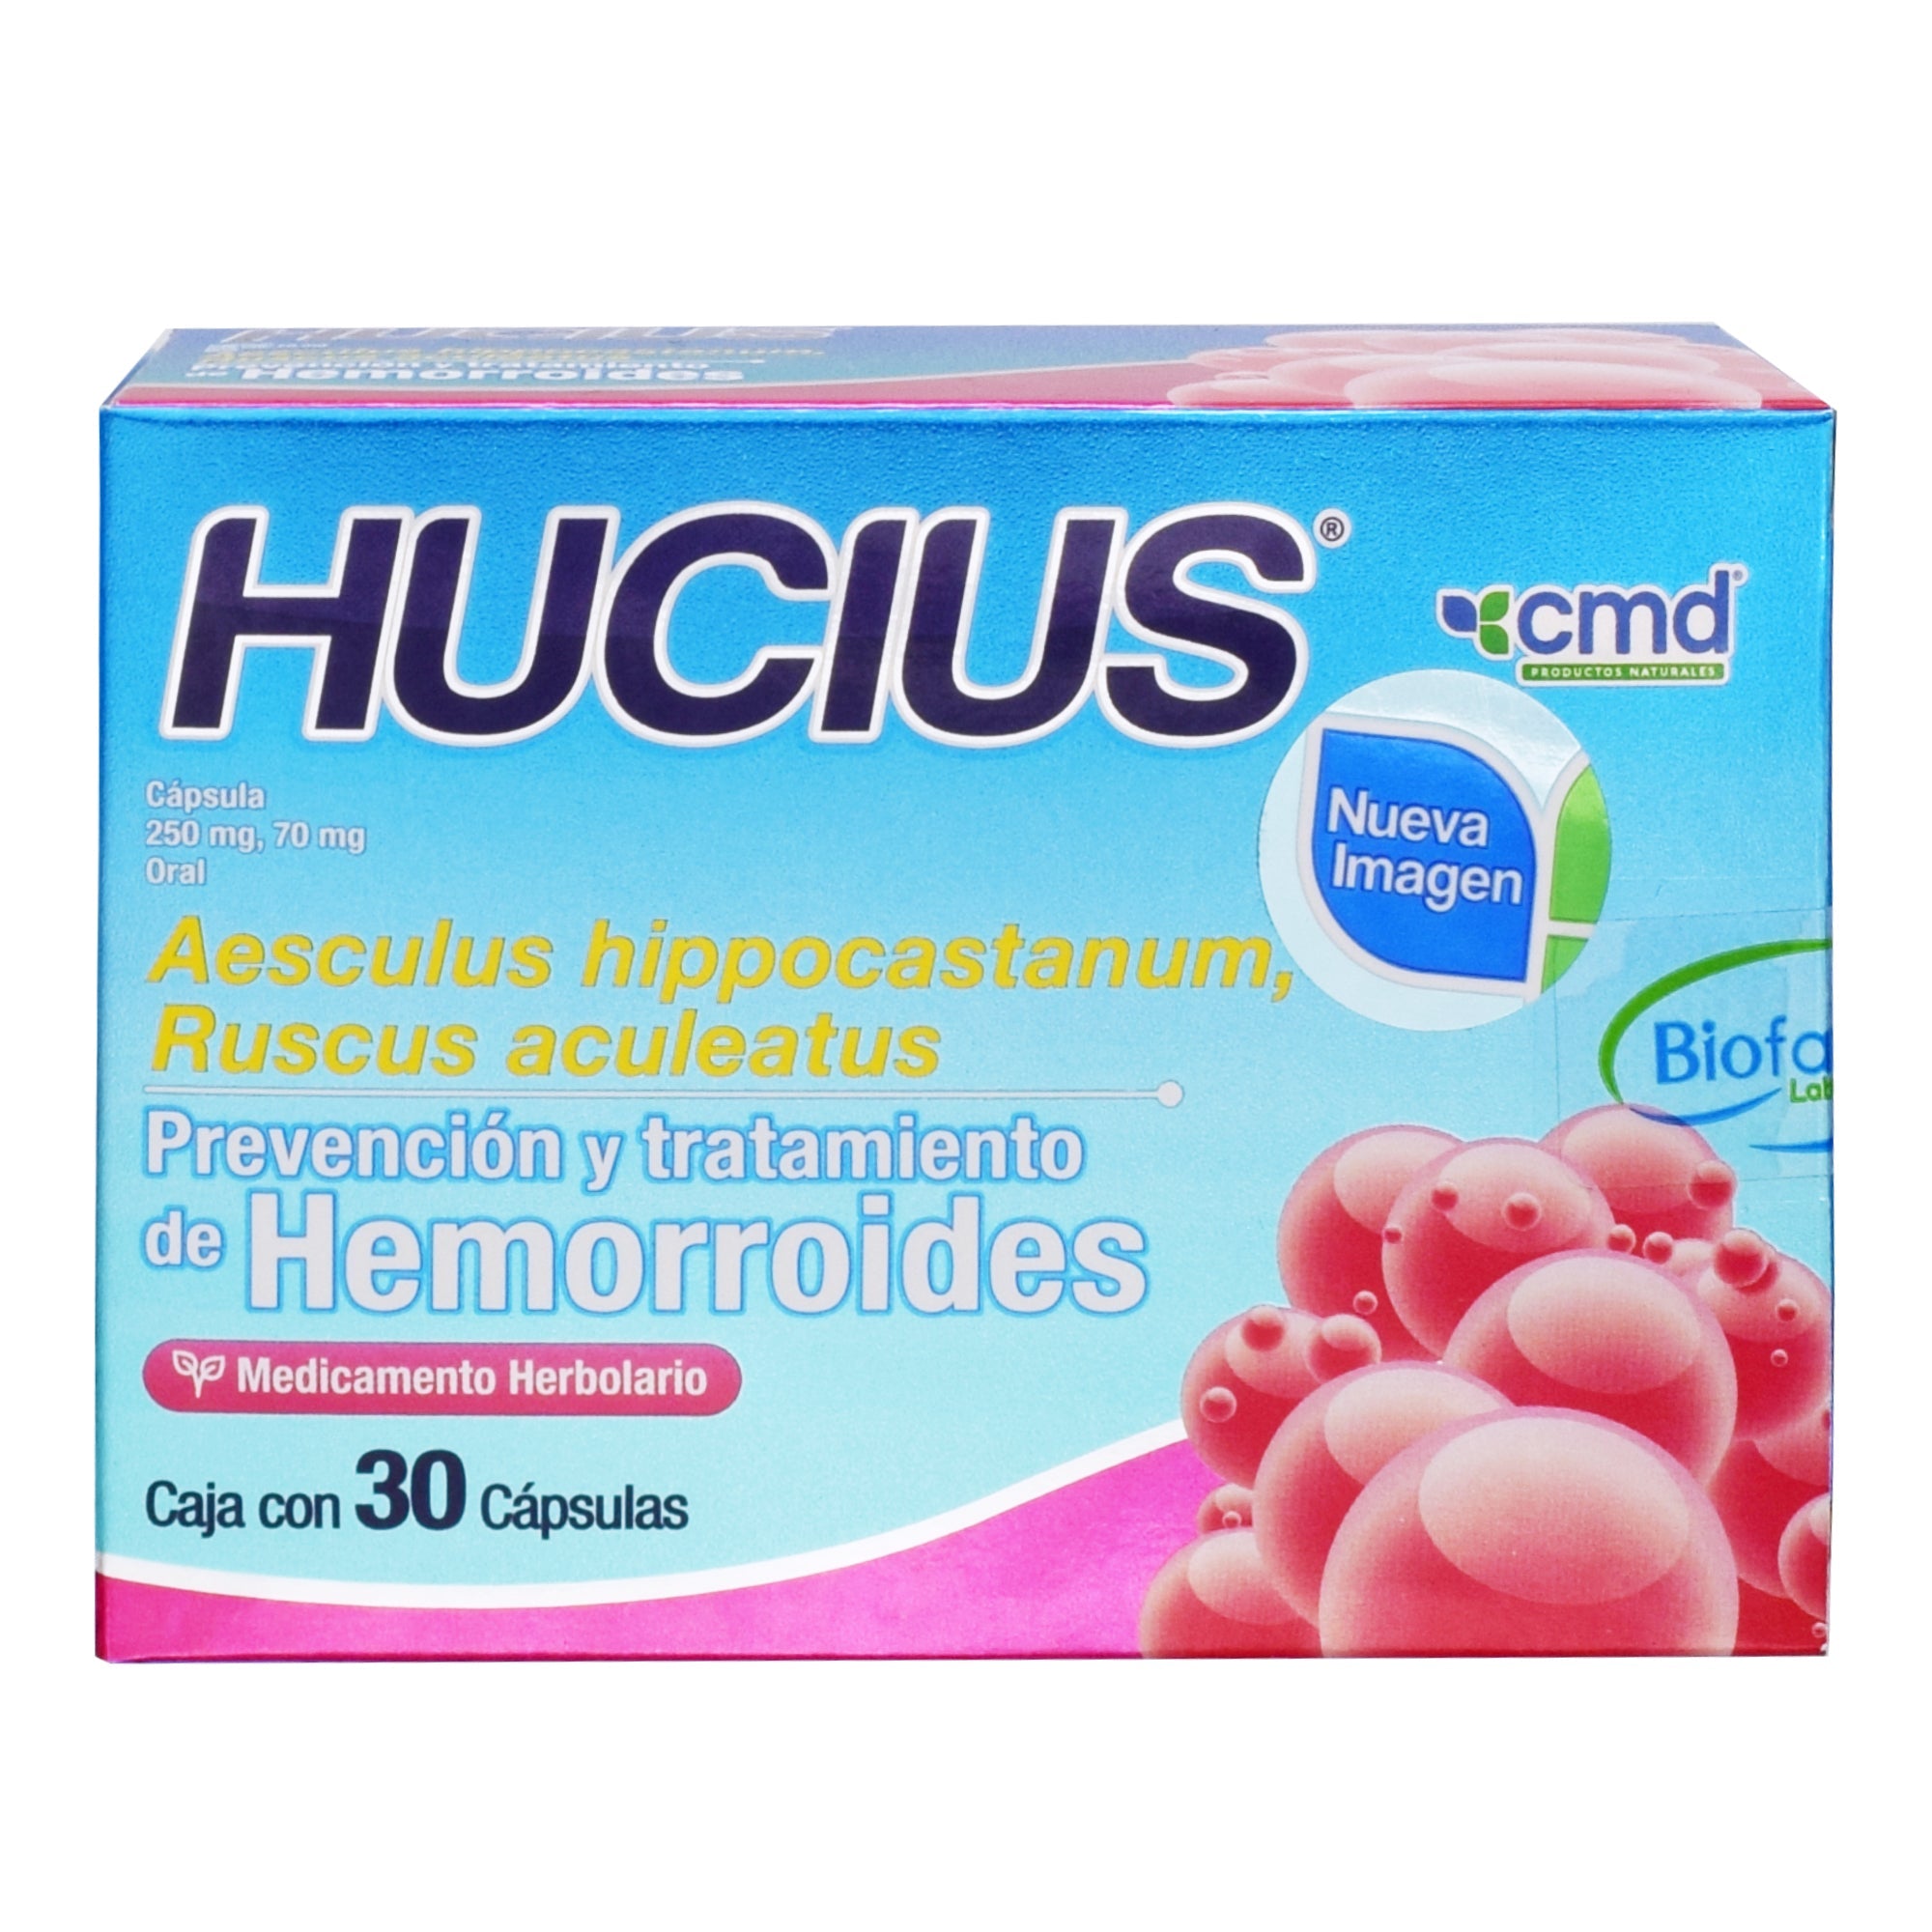 Hucius 30 cap